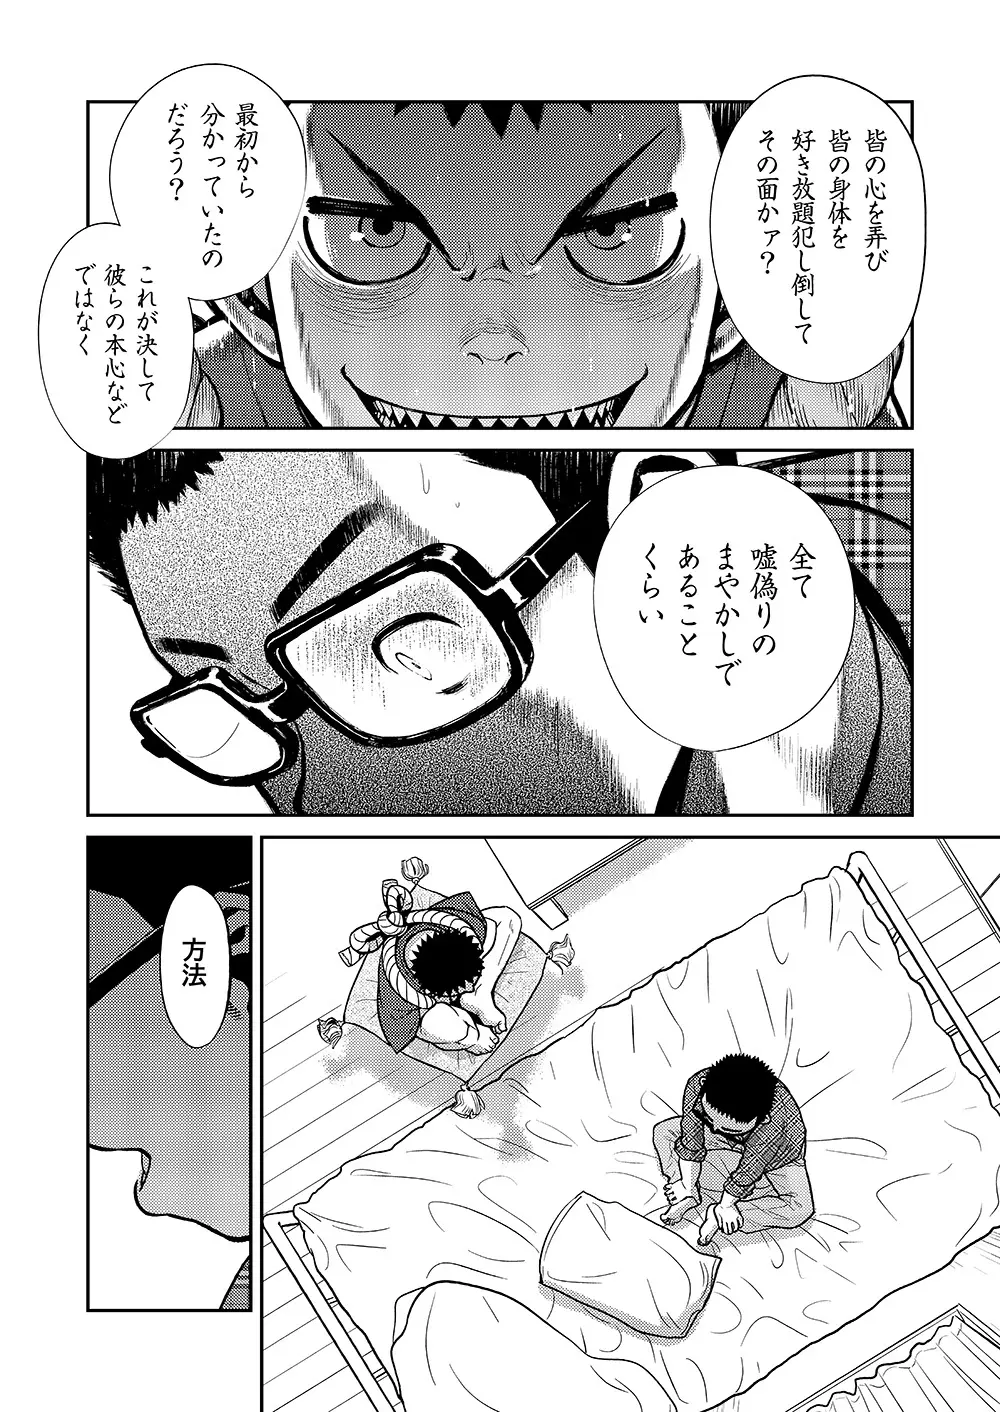 漫画少年ズーム VOL.11 & 12 52ページ